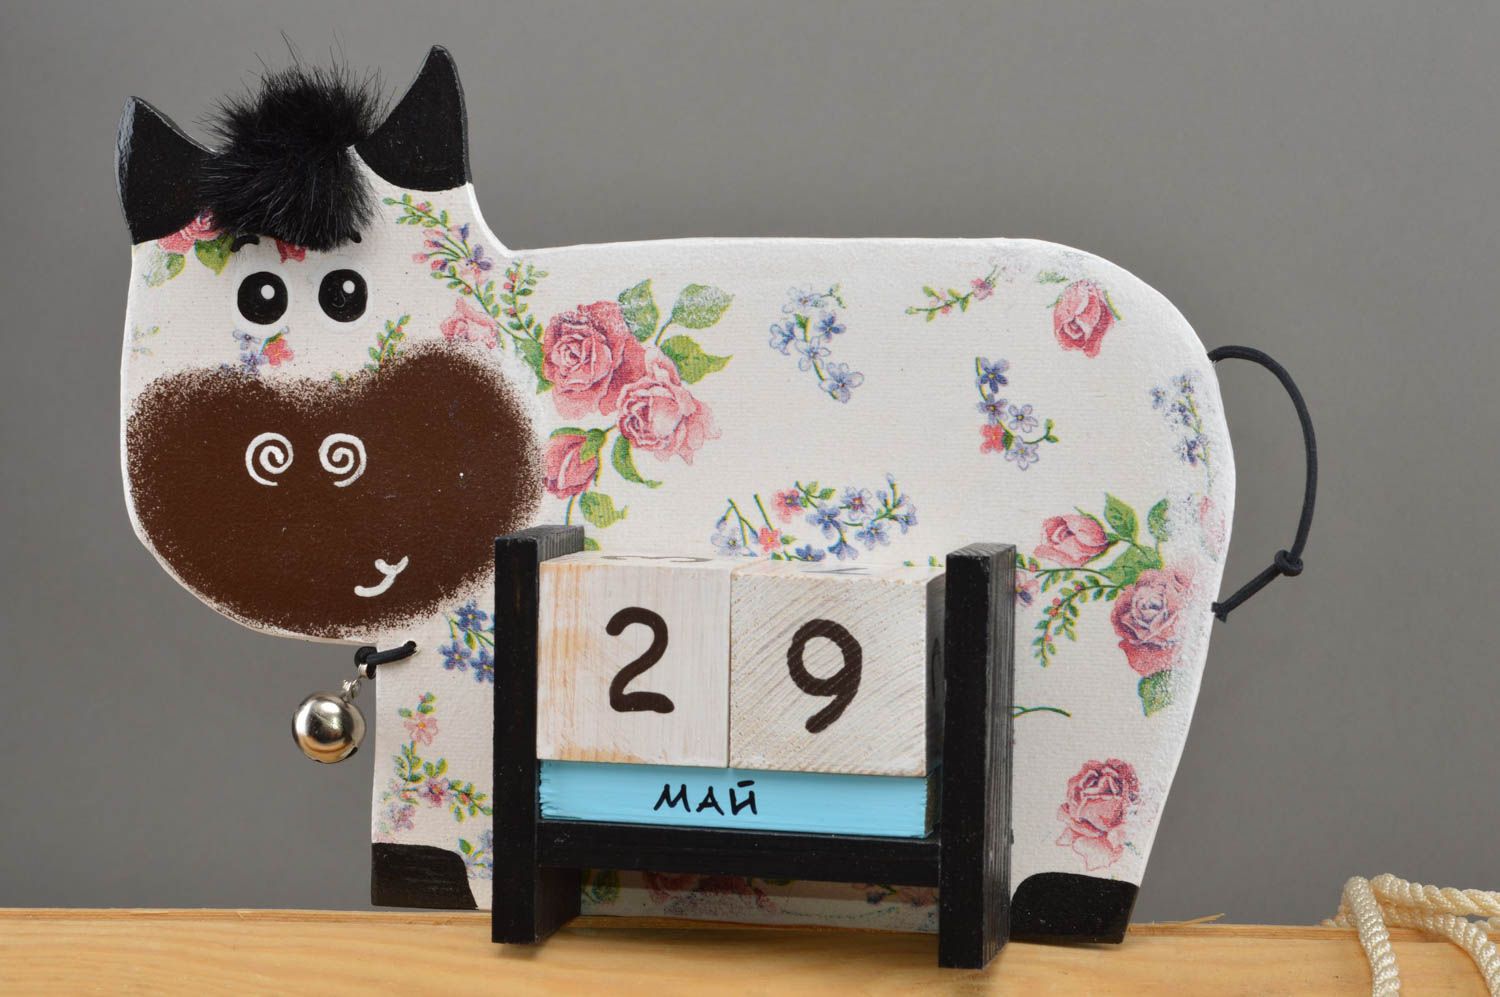 Детский календарь в виде коровки из фанеры декупаж цветочный ручной работы фото 2